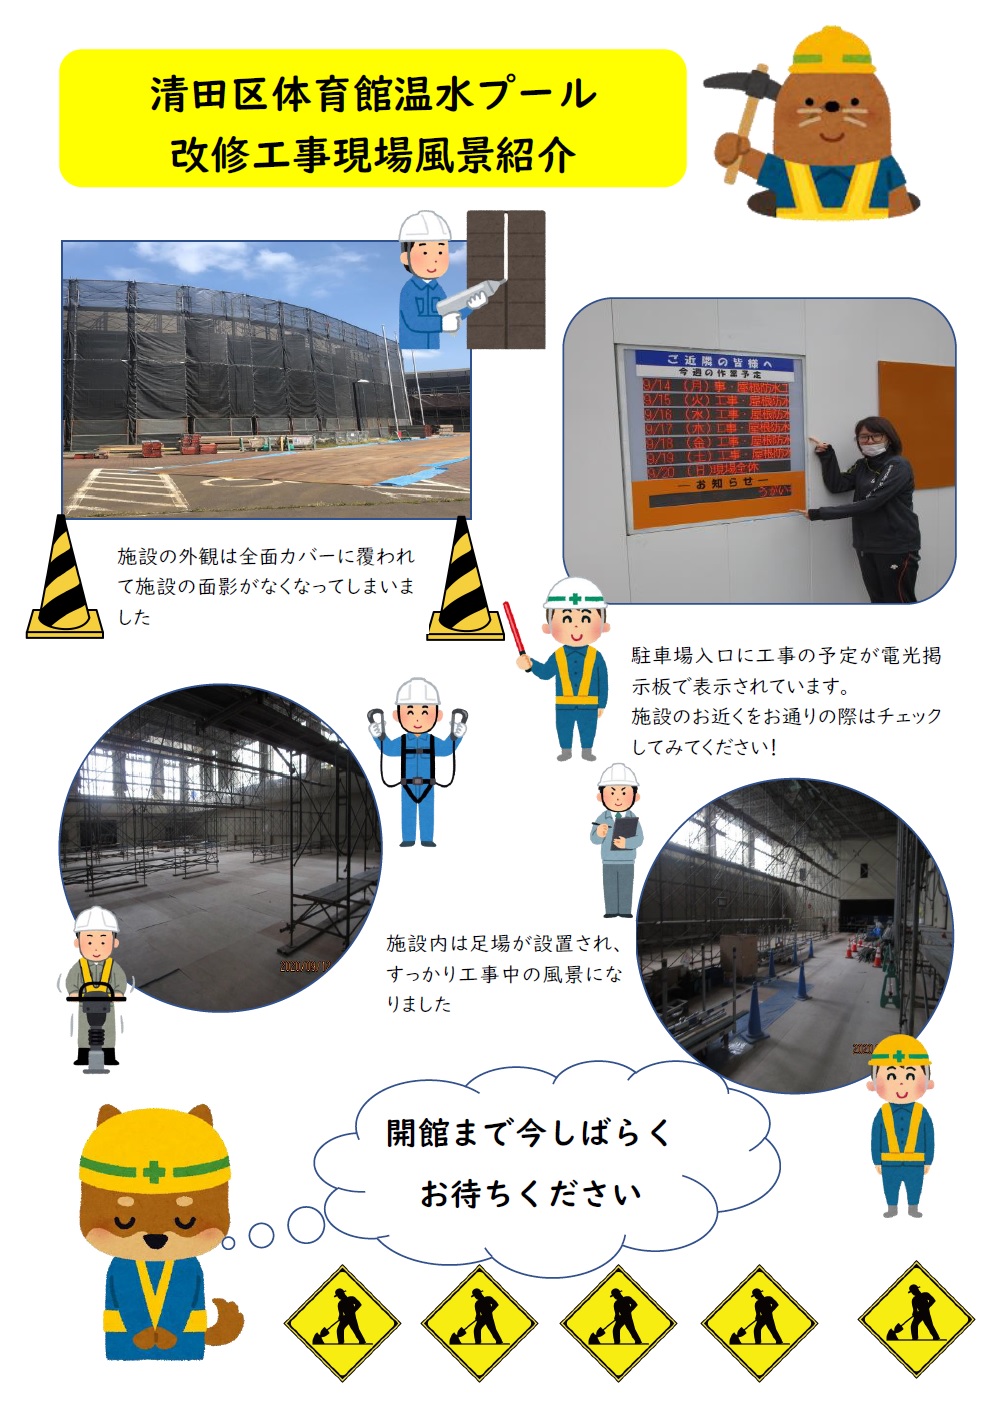 清田区体育館温水プール改修工事進捗状況のお知らせ画像